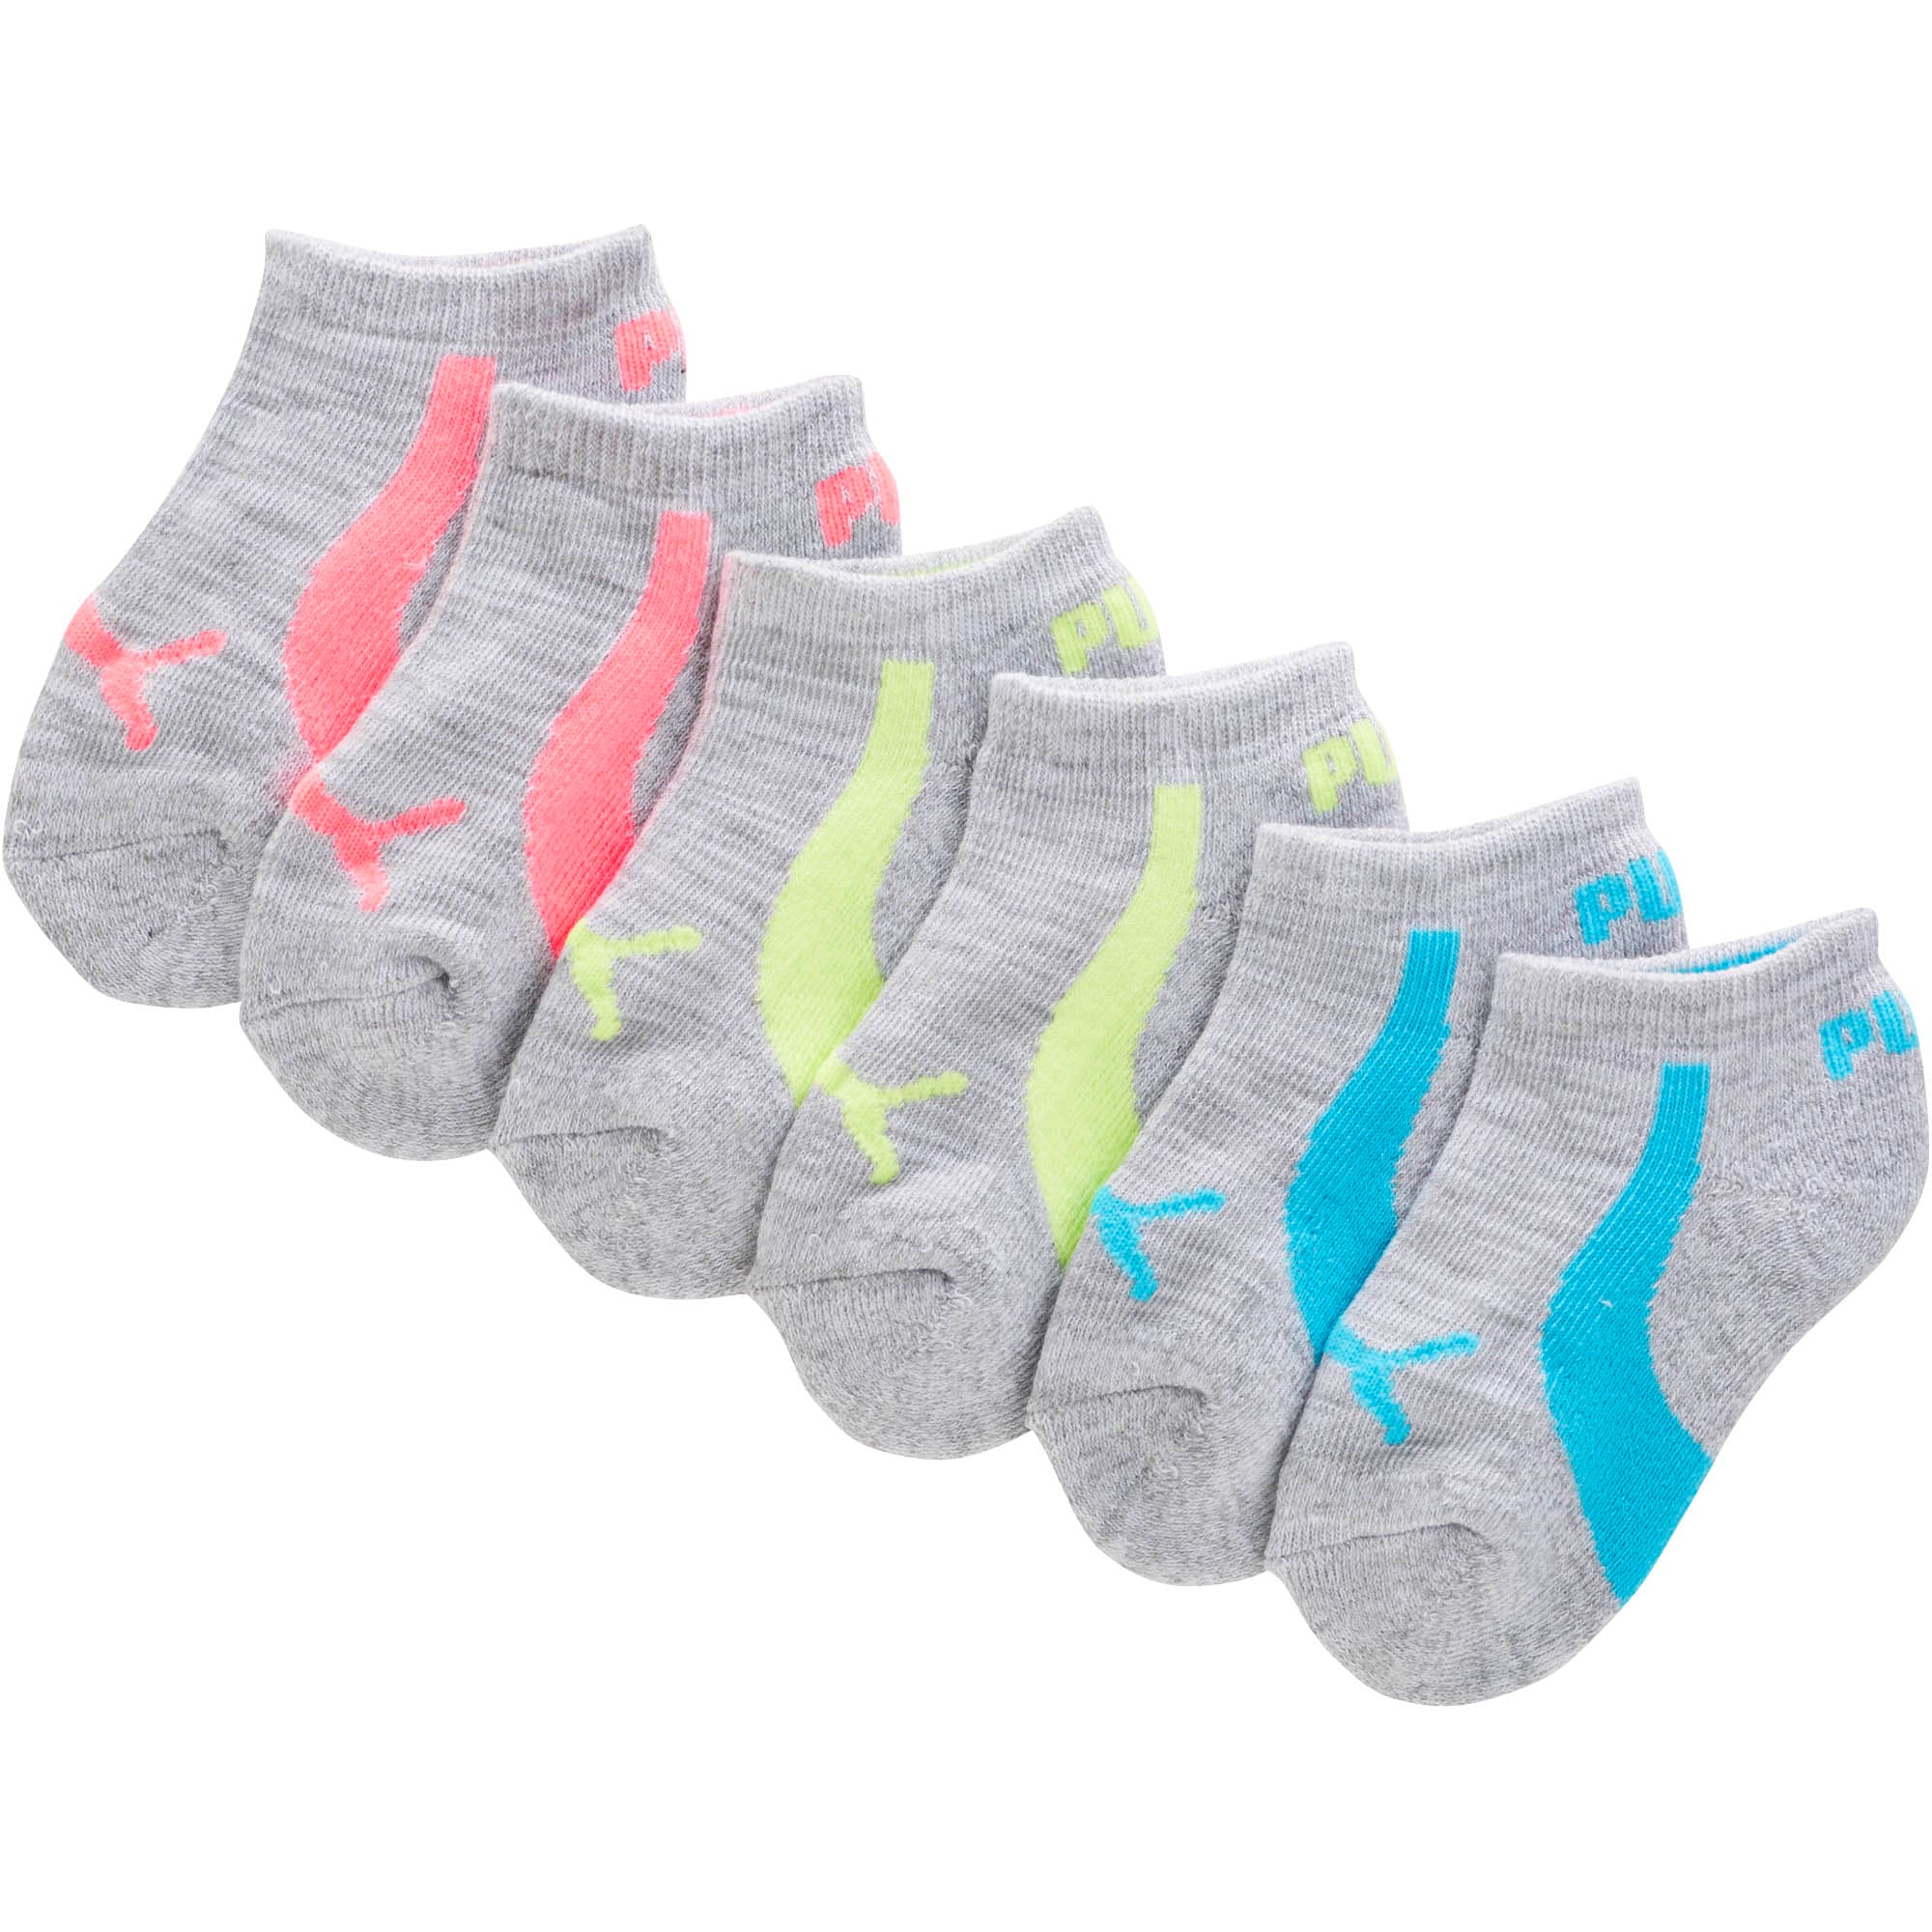 infant puma socks